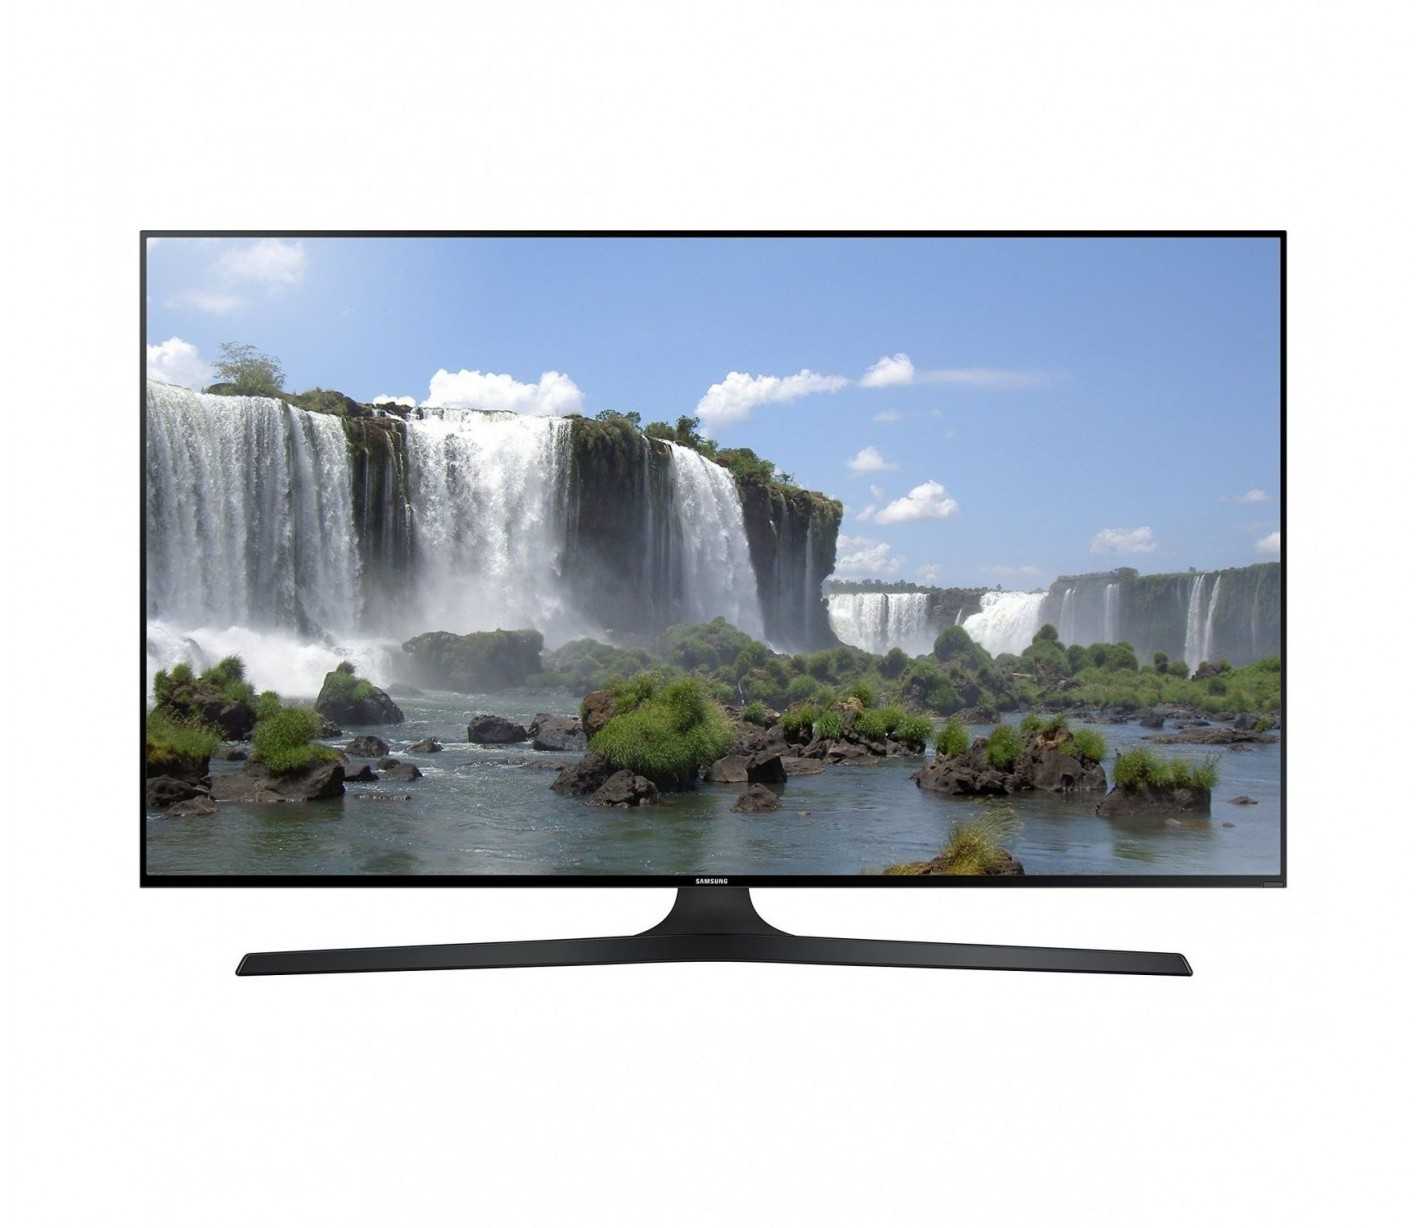 Жк телевизор 50" samsung ue50f6200akx — купить, цена и характеристики, отзывы